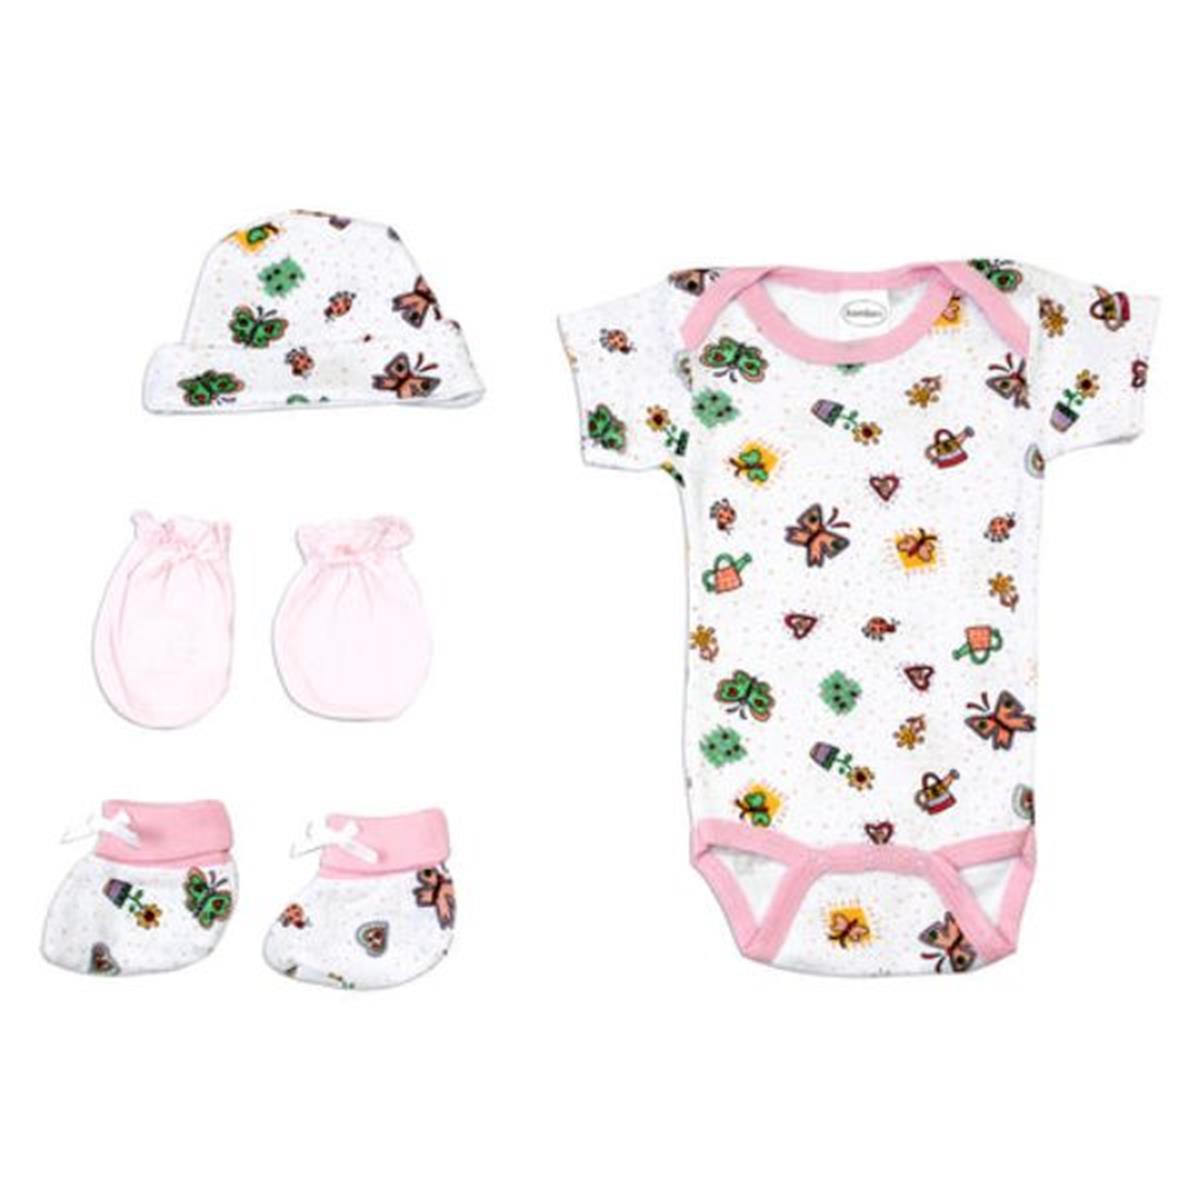 Bambini LS-0082 Newborn Baby Girls Layette Baby Shower Gift Set&#44; White & Pink - Newborn